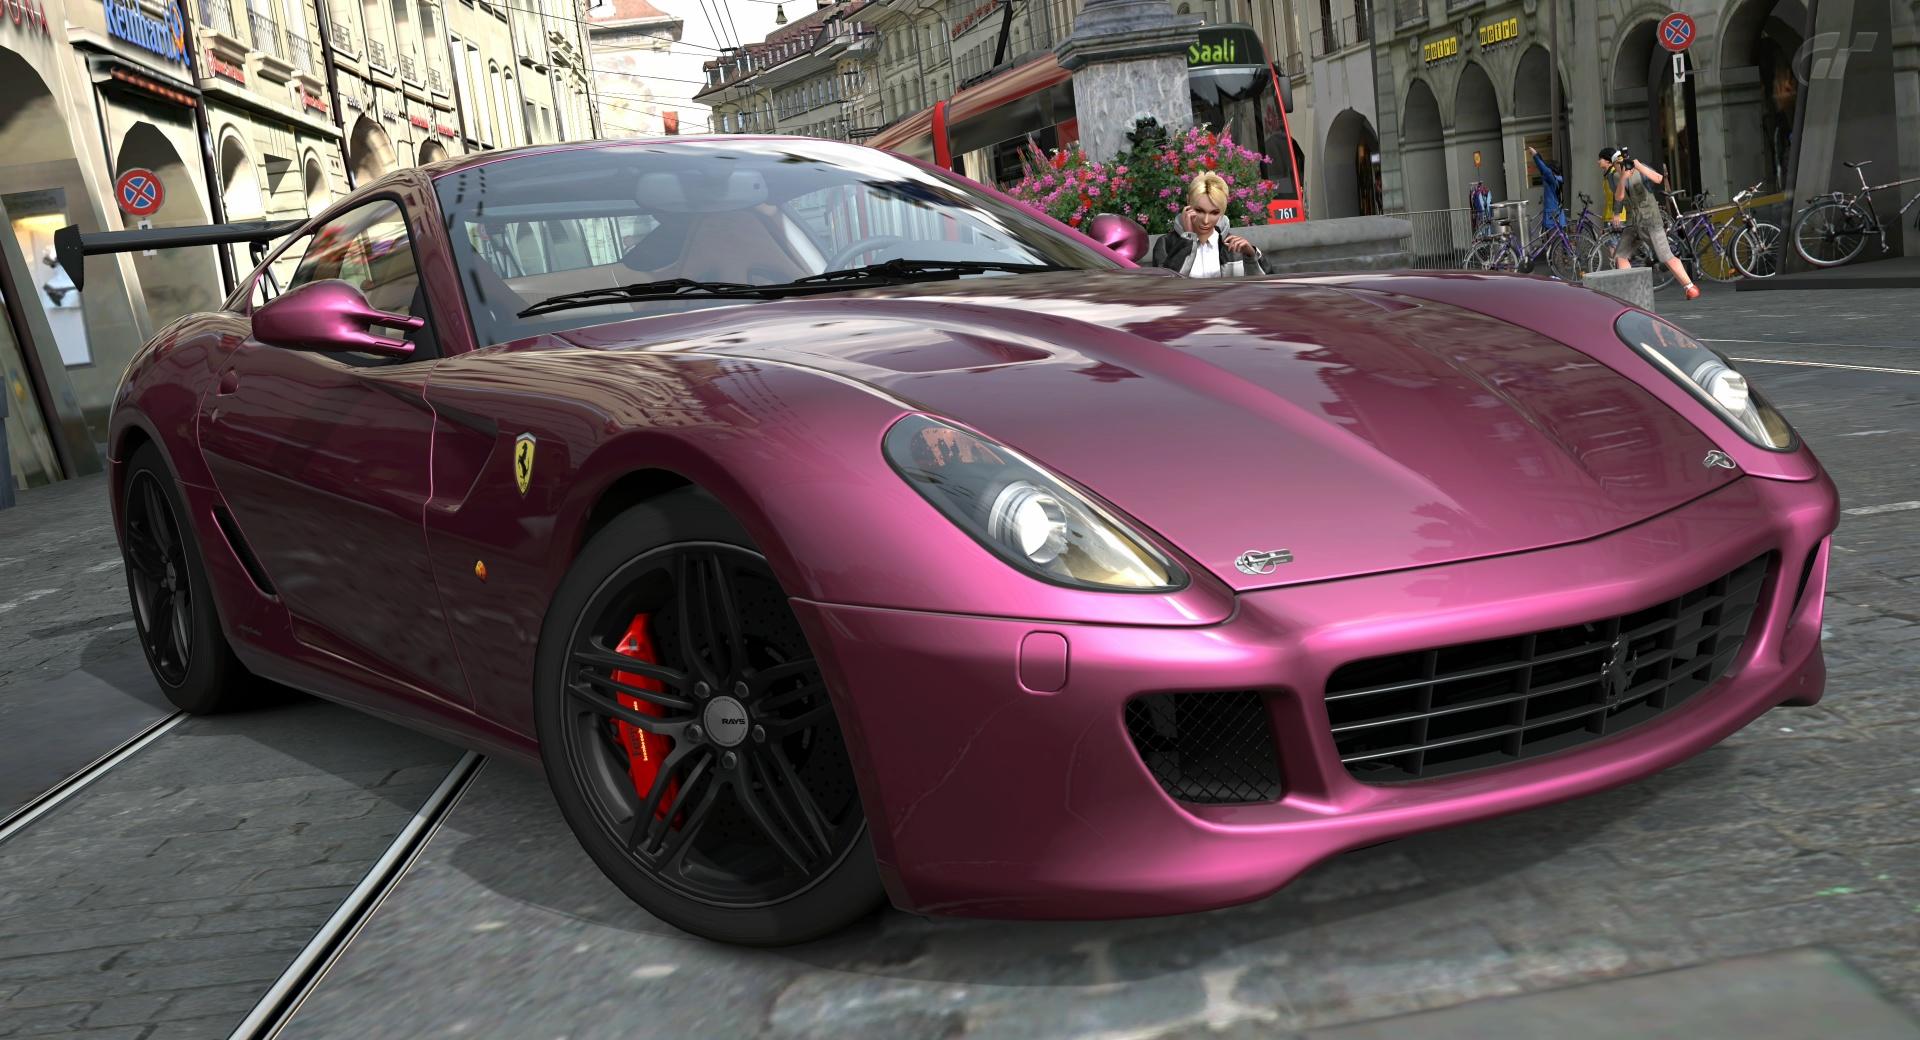 Ferrari 599 Pink at 2048 x 2048 iPad size wallpapers HD quality